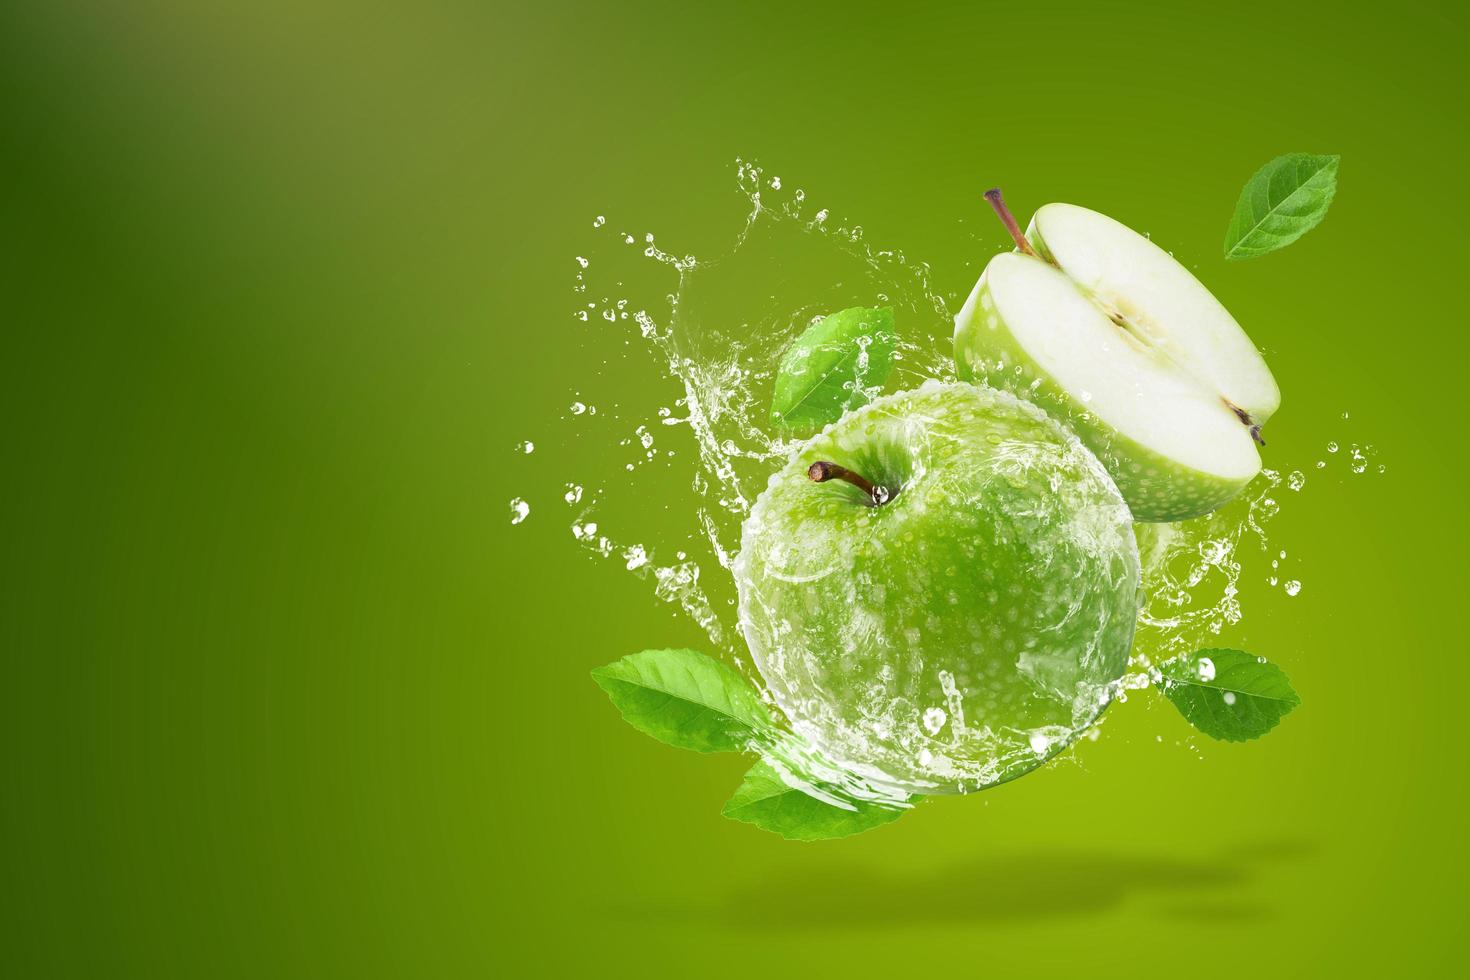 acqua che spruzza sulla mela verde fresca foto